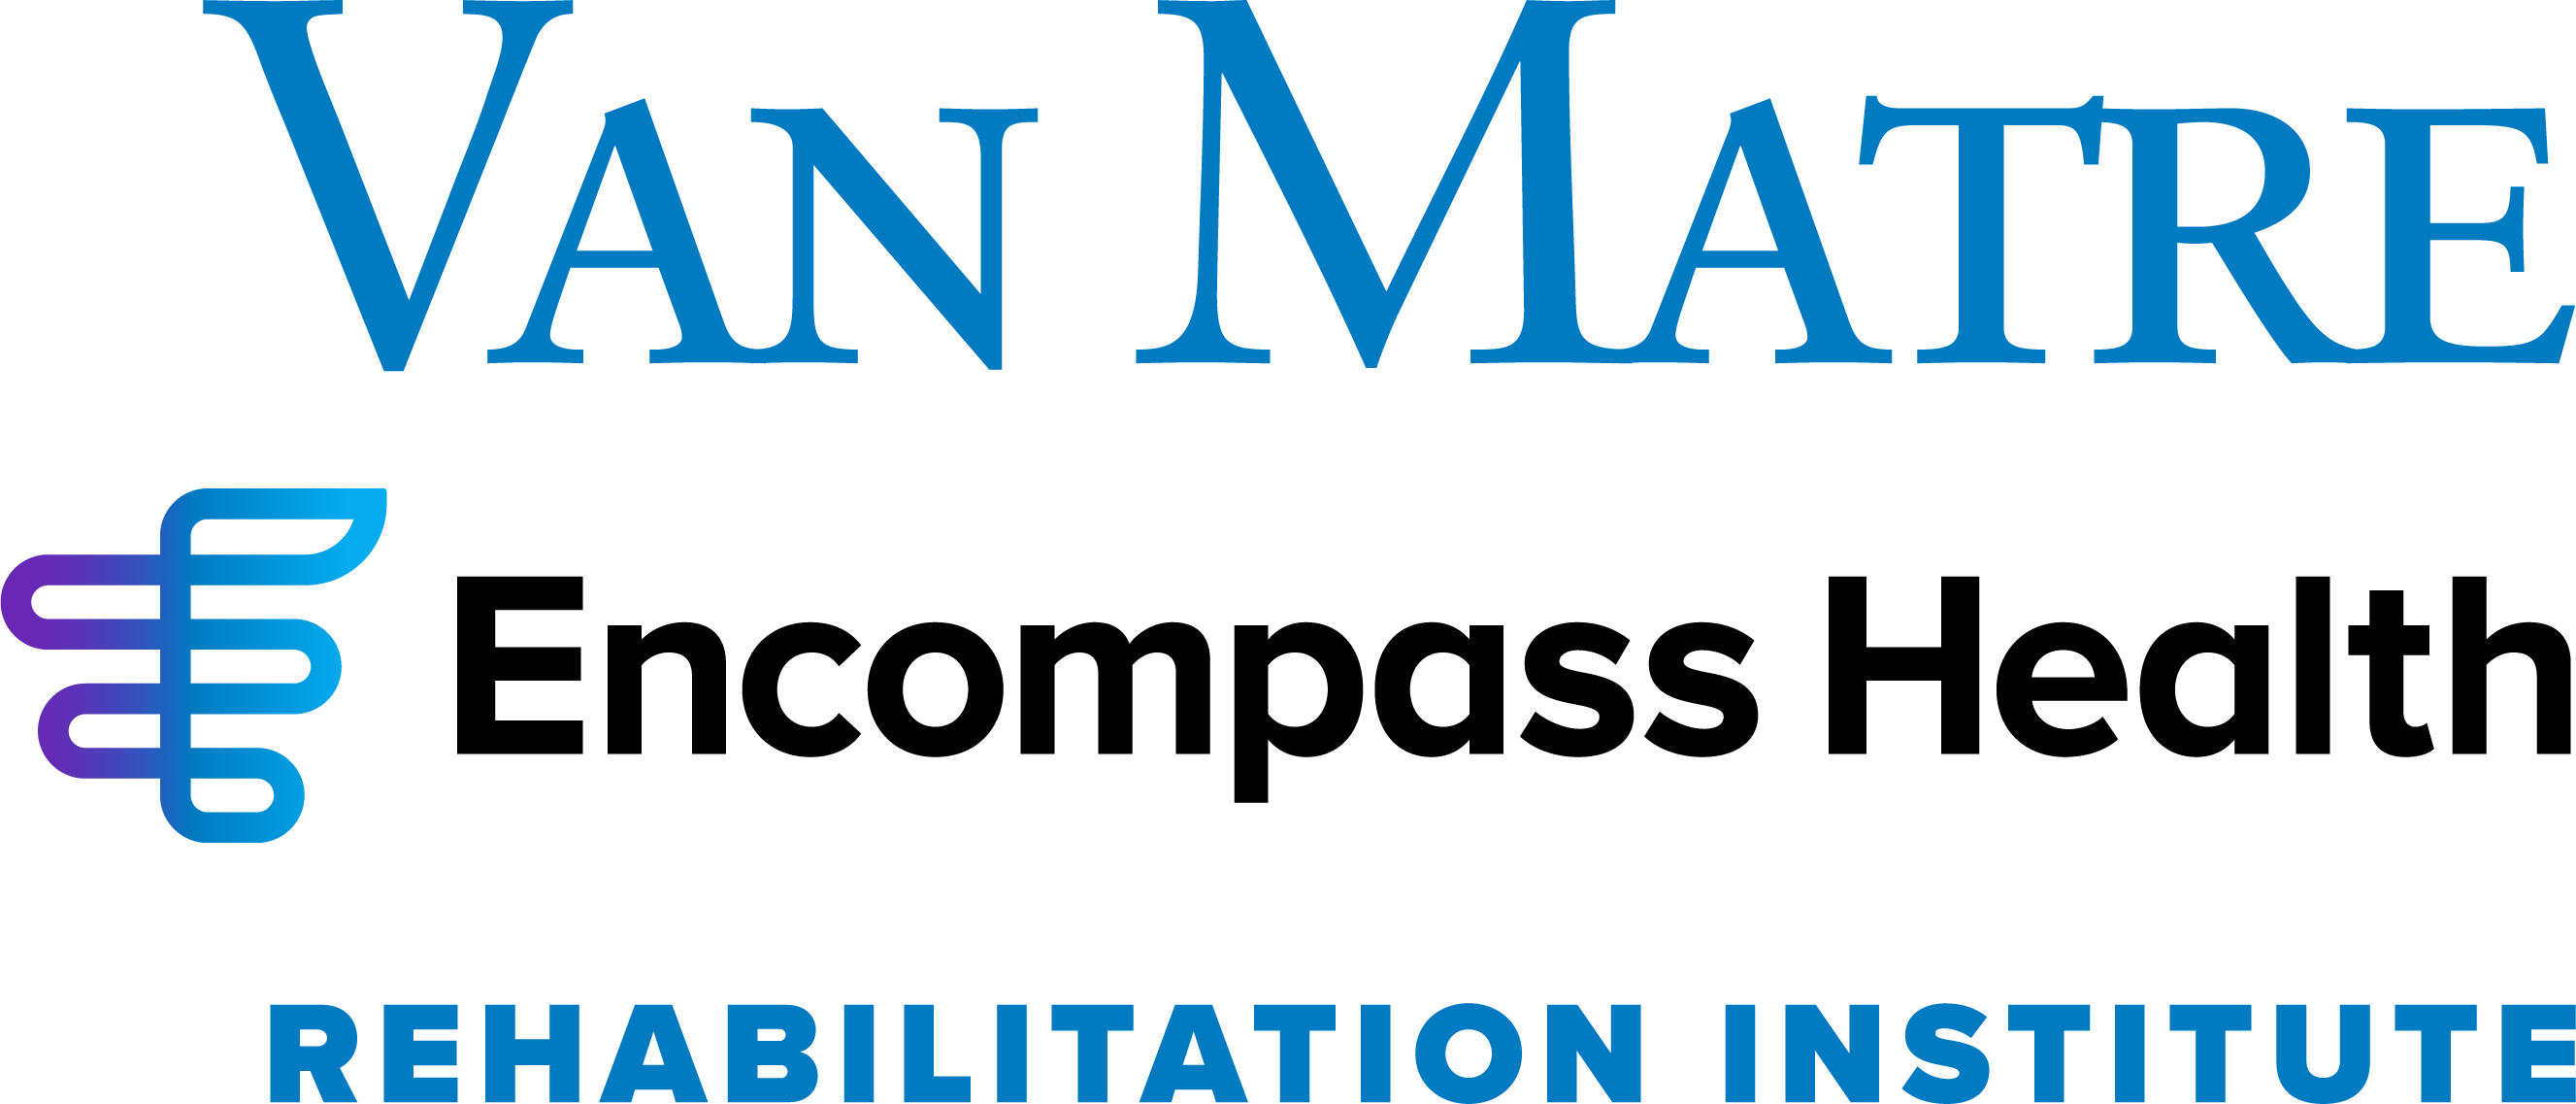 Van Matre Encompass Health Rehabilitation Institute logo